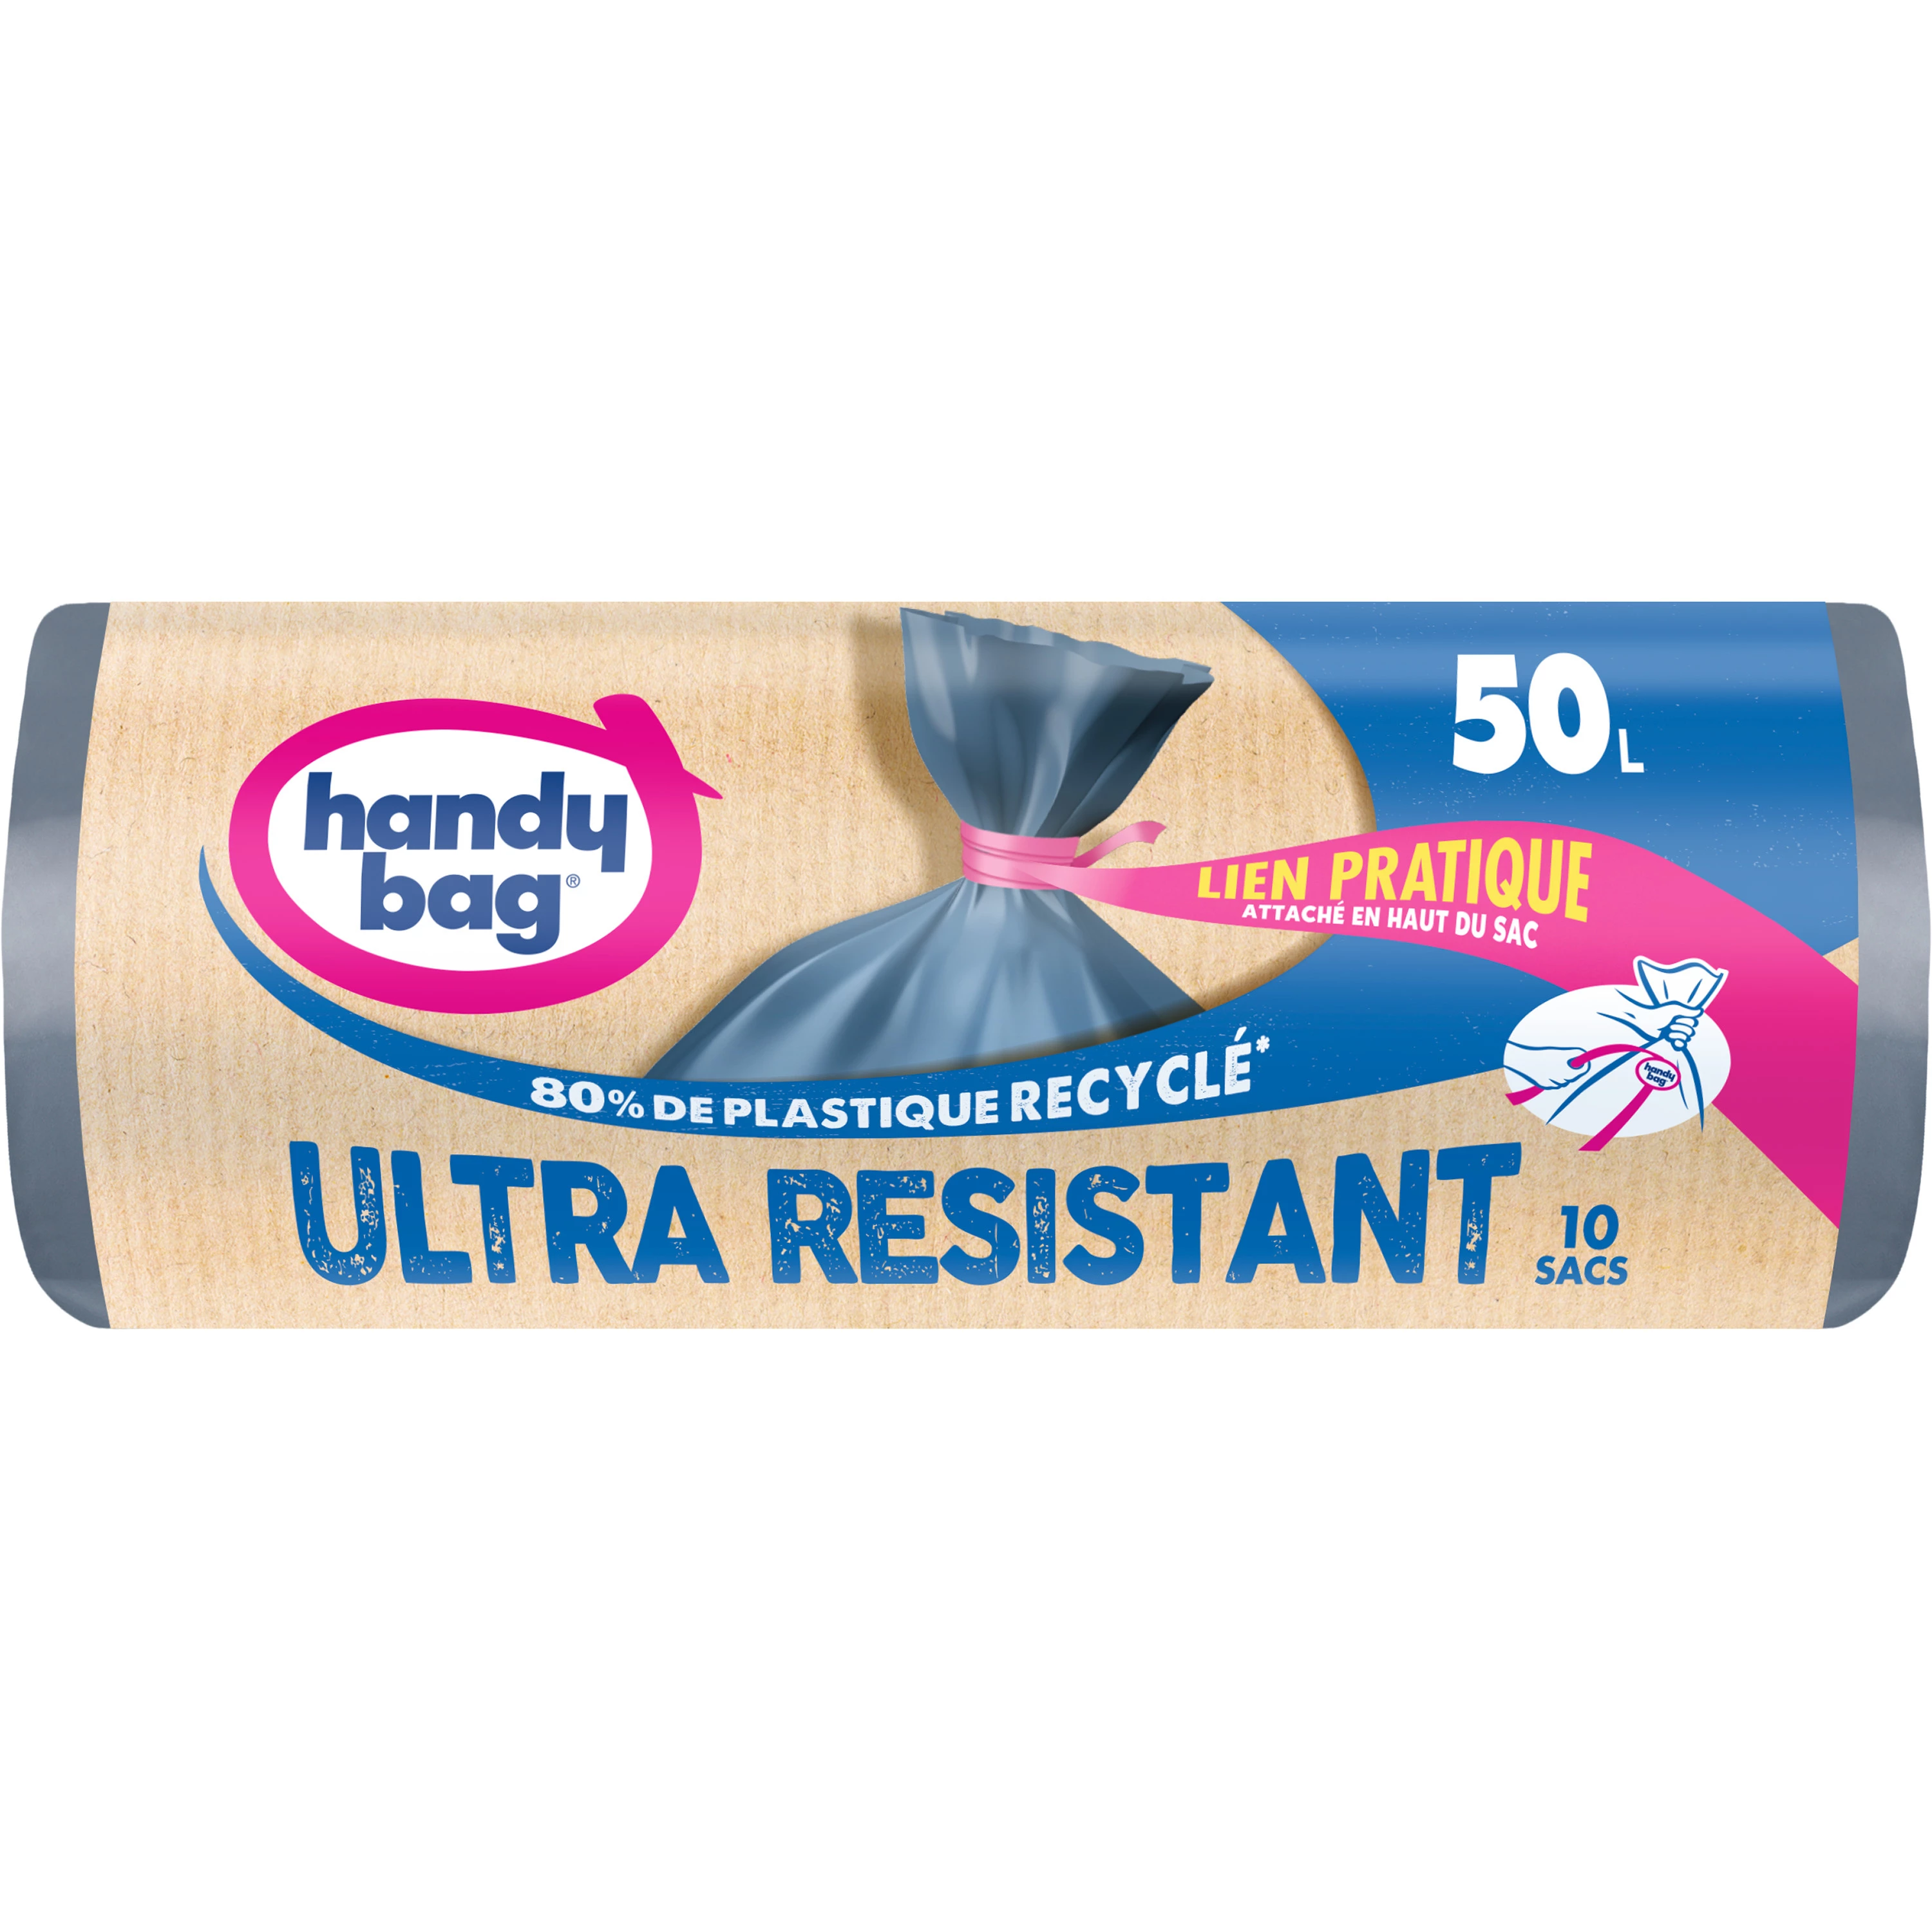 Sac poubelle ultra résistant X10 50L - HANDY BAG